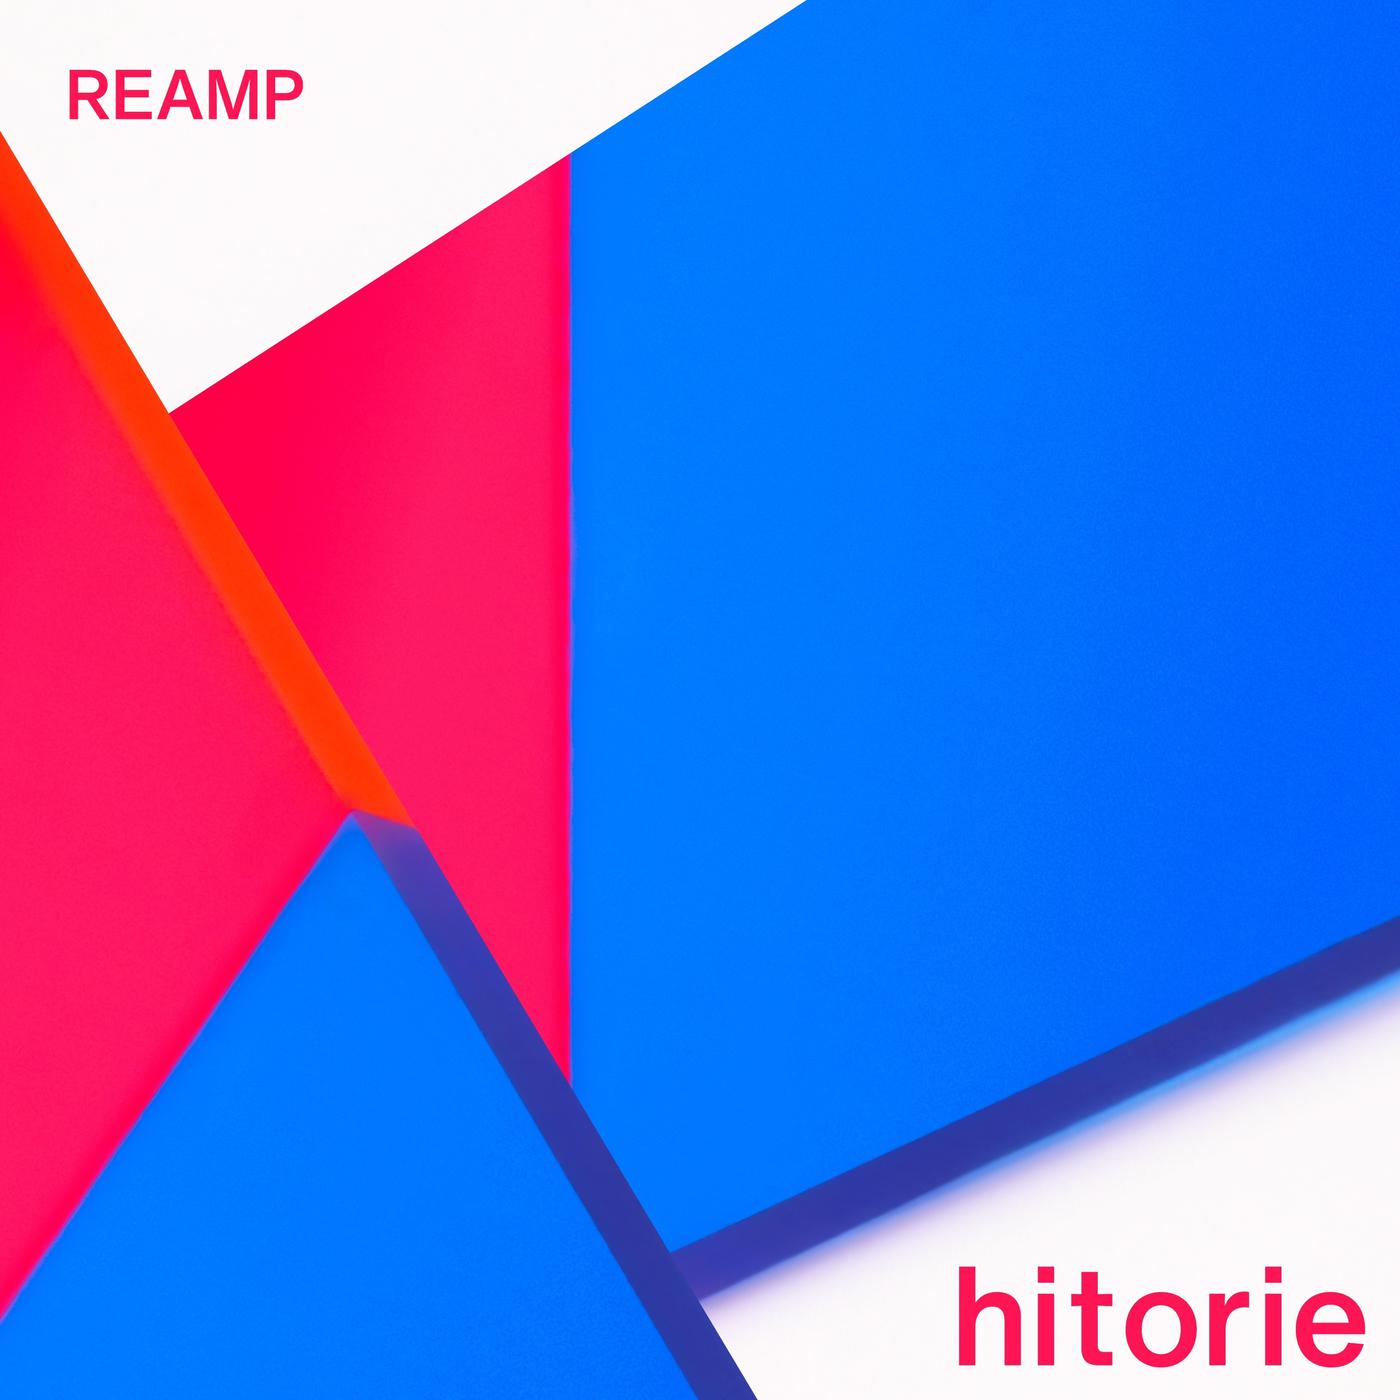 ハイゲイン歌词 歌手ヒトリエ-专辑REAMP-单曲《ハイゲイン》LRC歌词下载